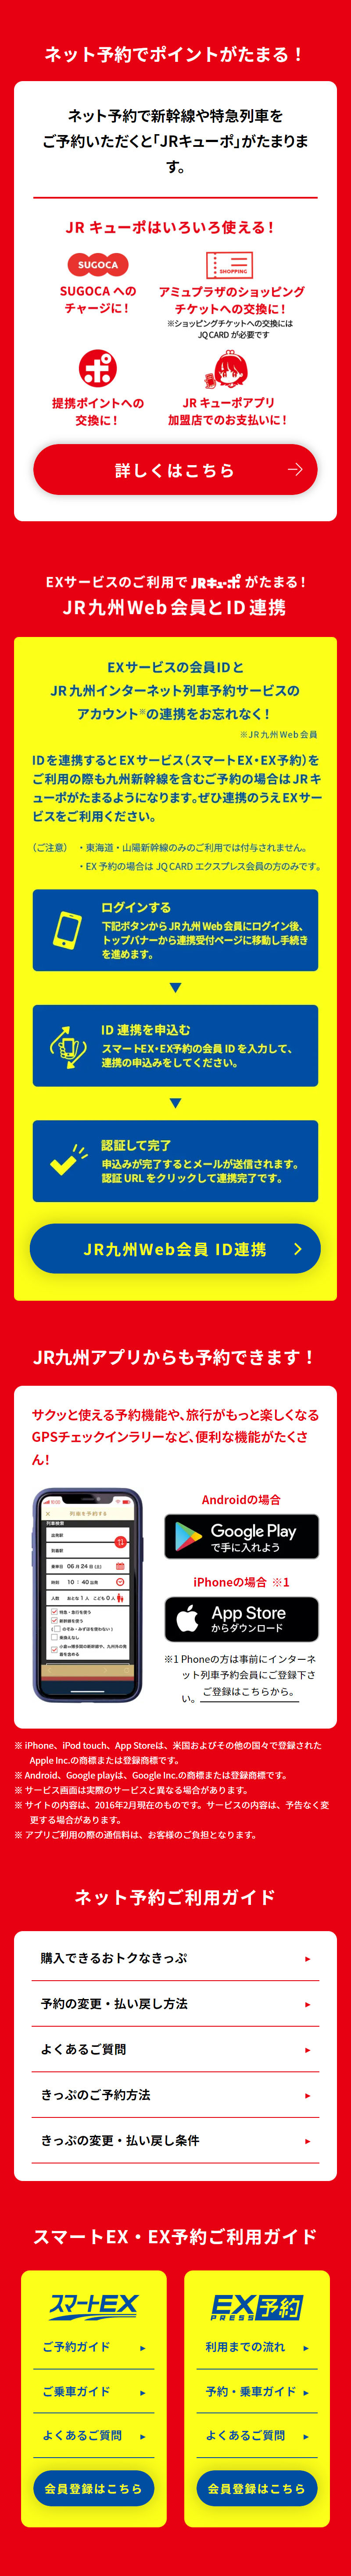 JR九州ネット予約_sp_2